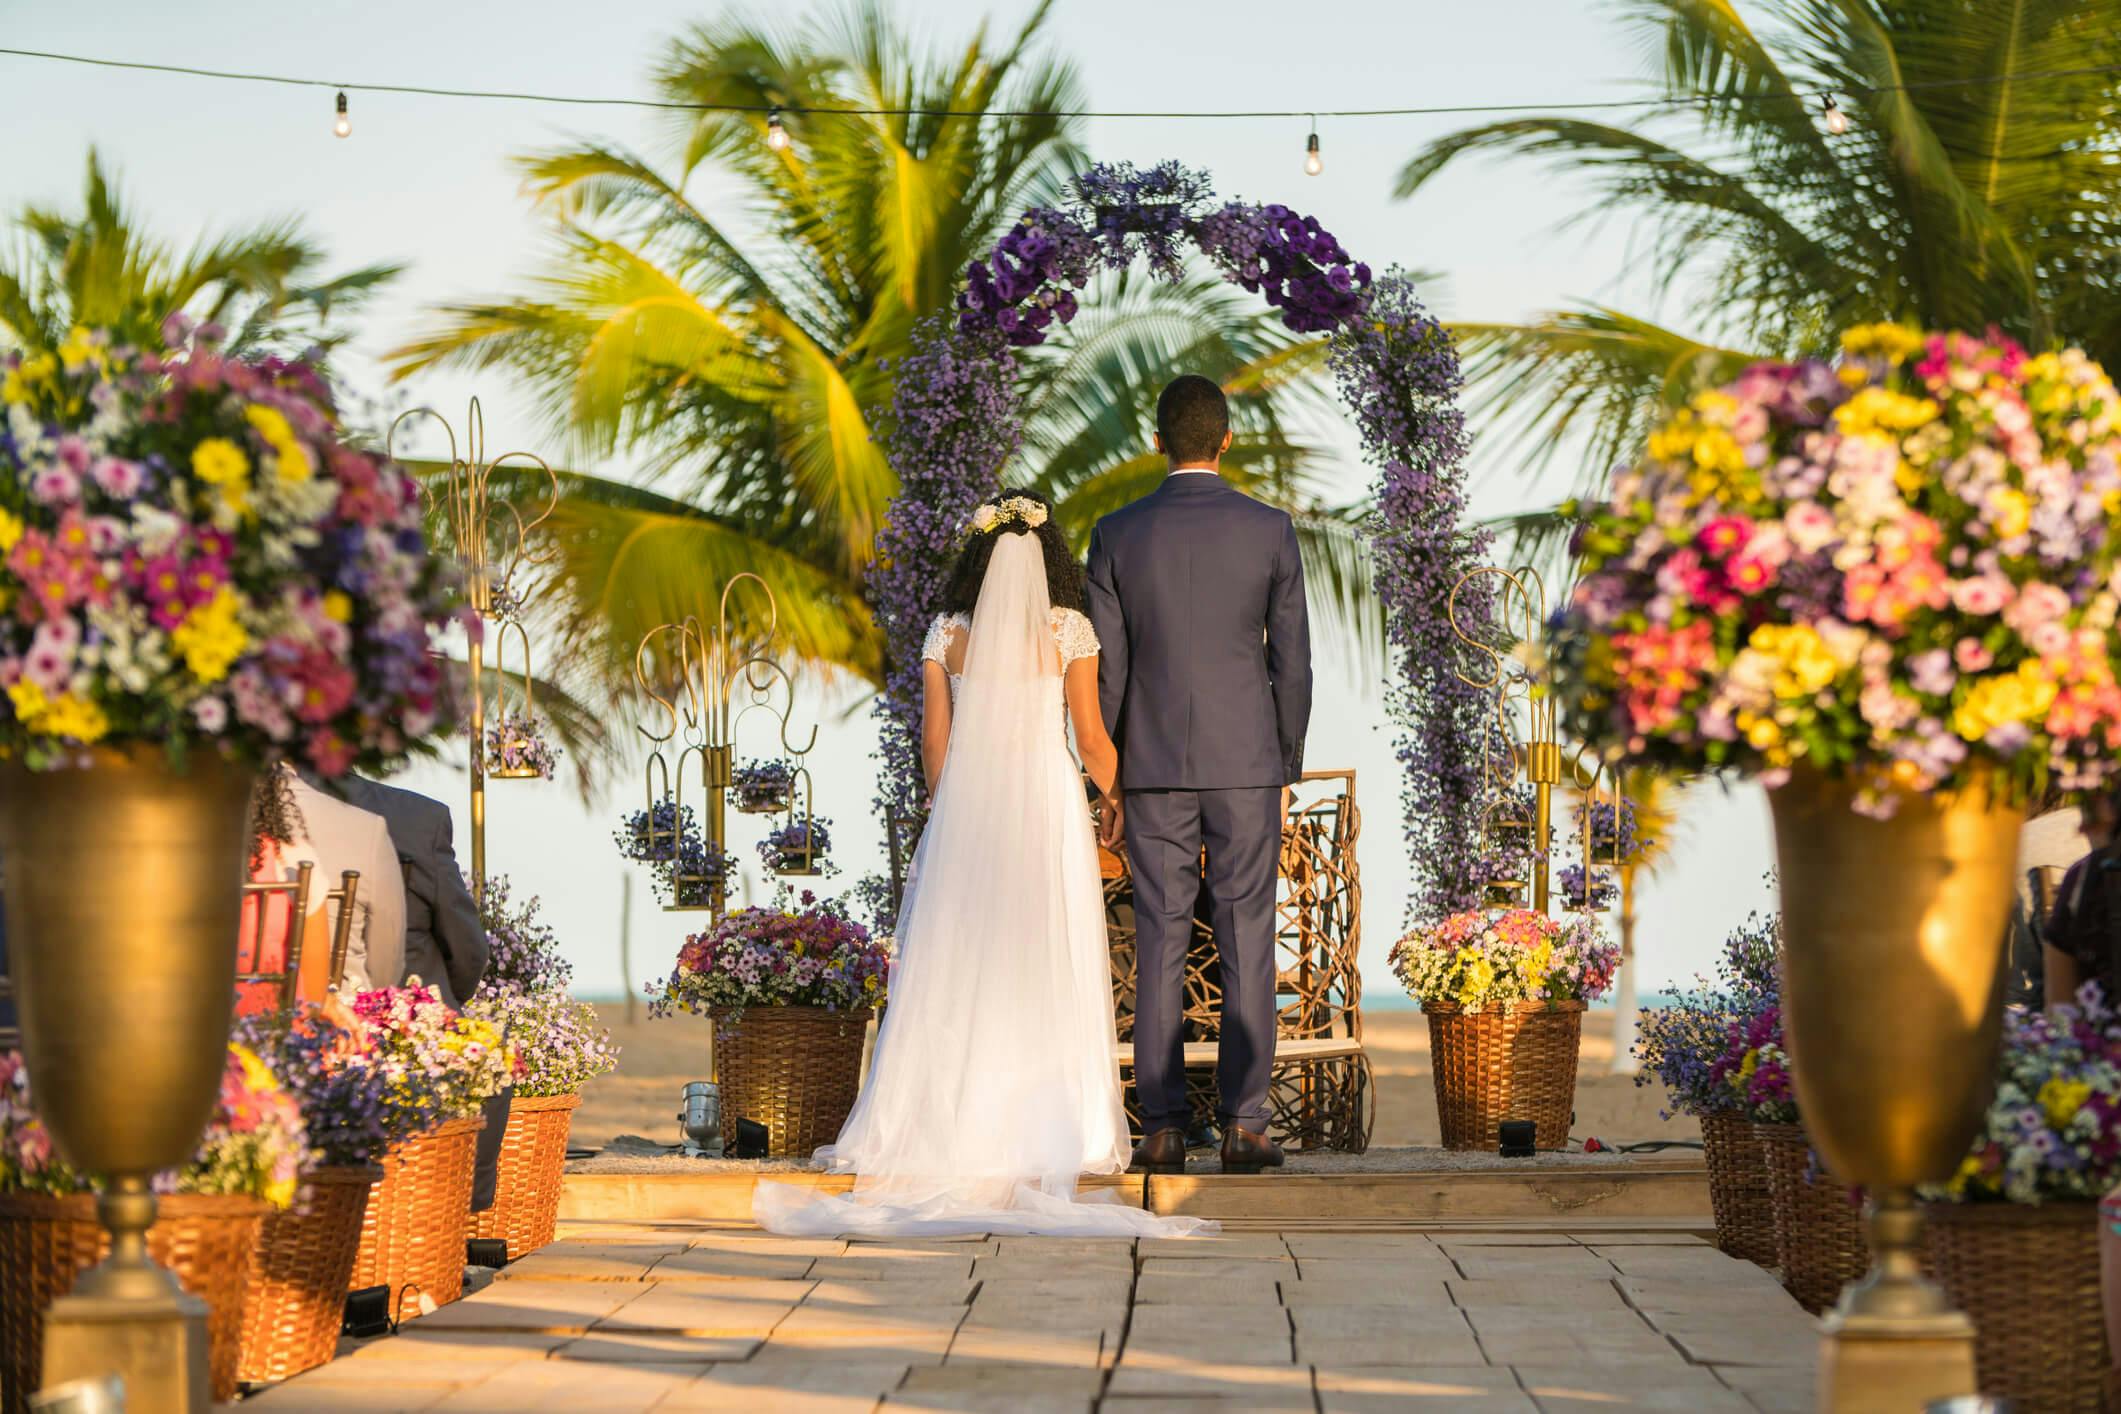 Veja 4 dicas essenciais para o seu casamento na praia ser incrível